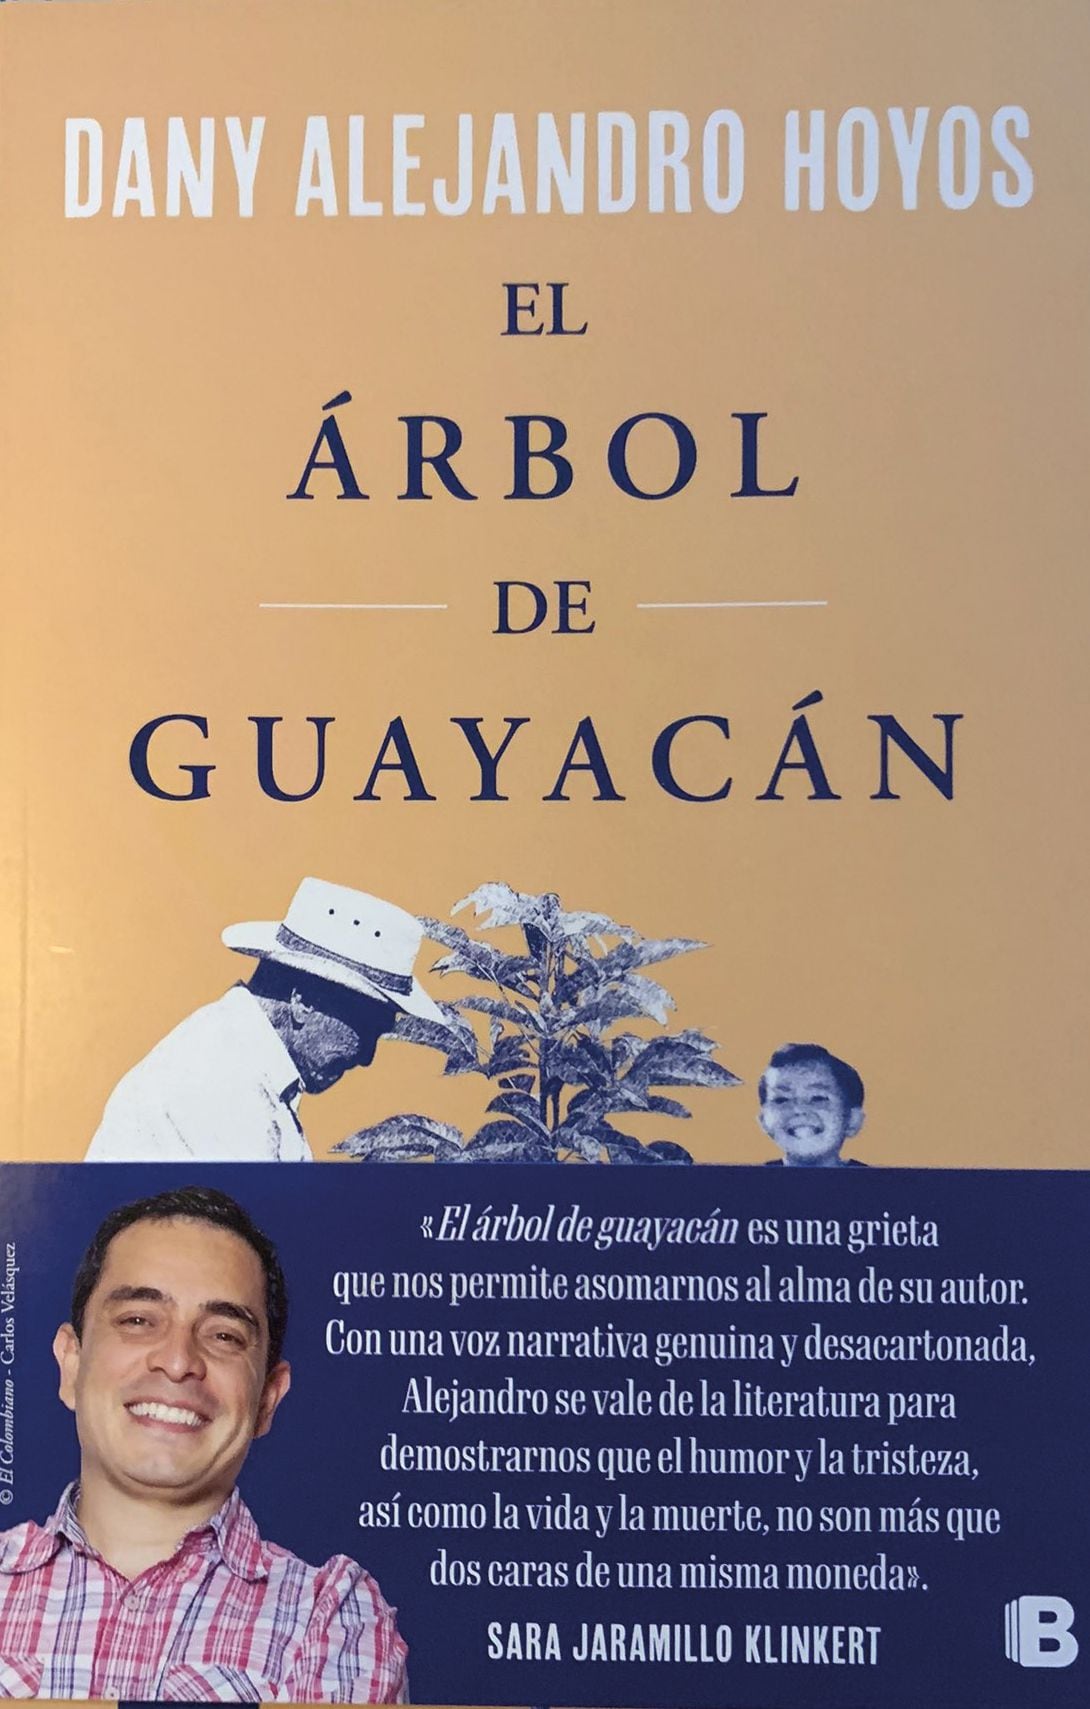 ‘El árbol de guayacán’,  bajo la firma de Dany Alejandro Hoyos, no es un libro de humor. Es una historia sobre el dolor del duelo que vivieron millones de personas a las que el Covid-19 les arrebató a sus familiares, y un homenaje a los campesinos del país.